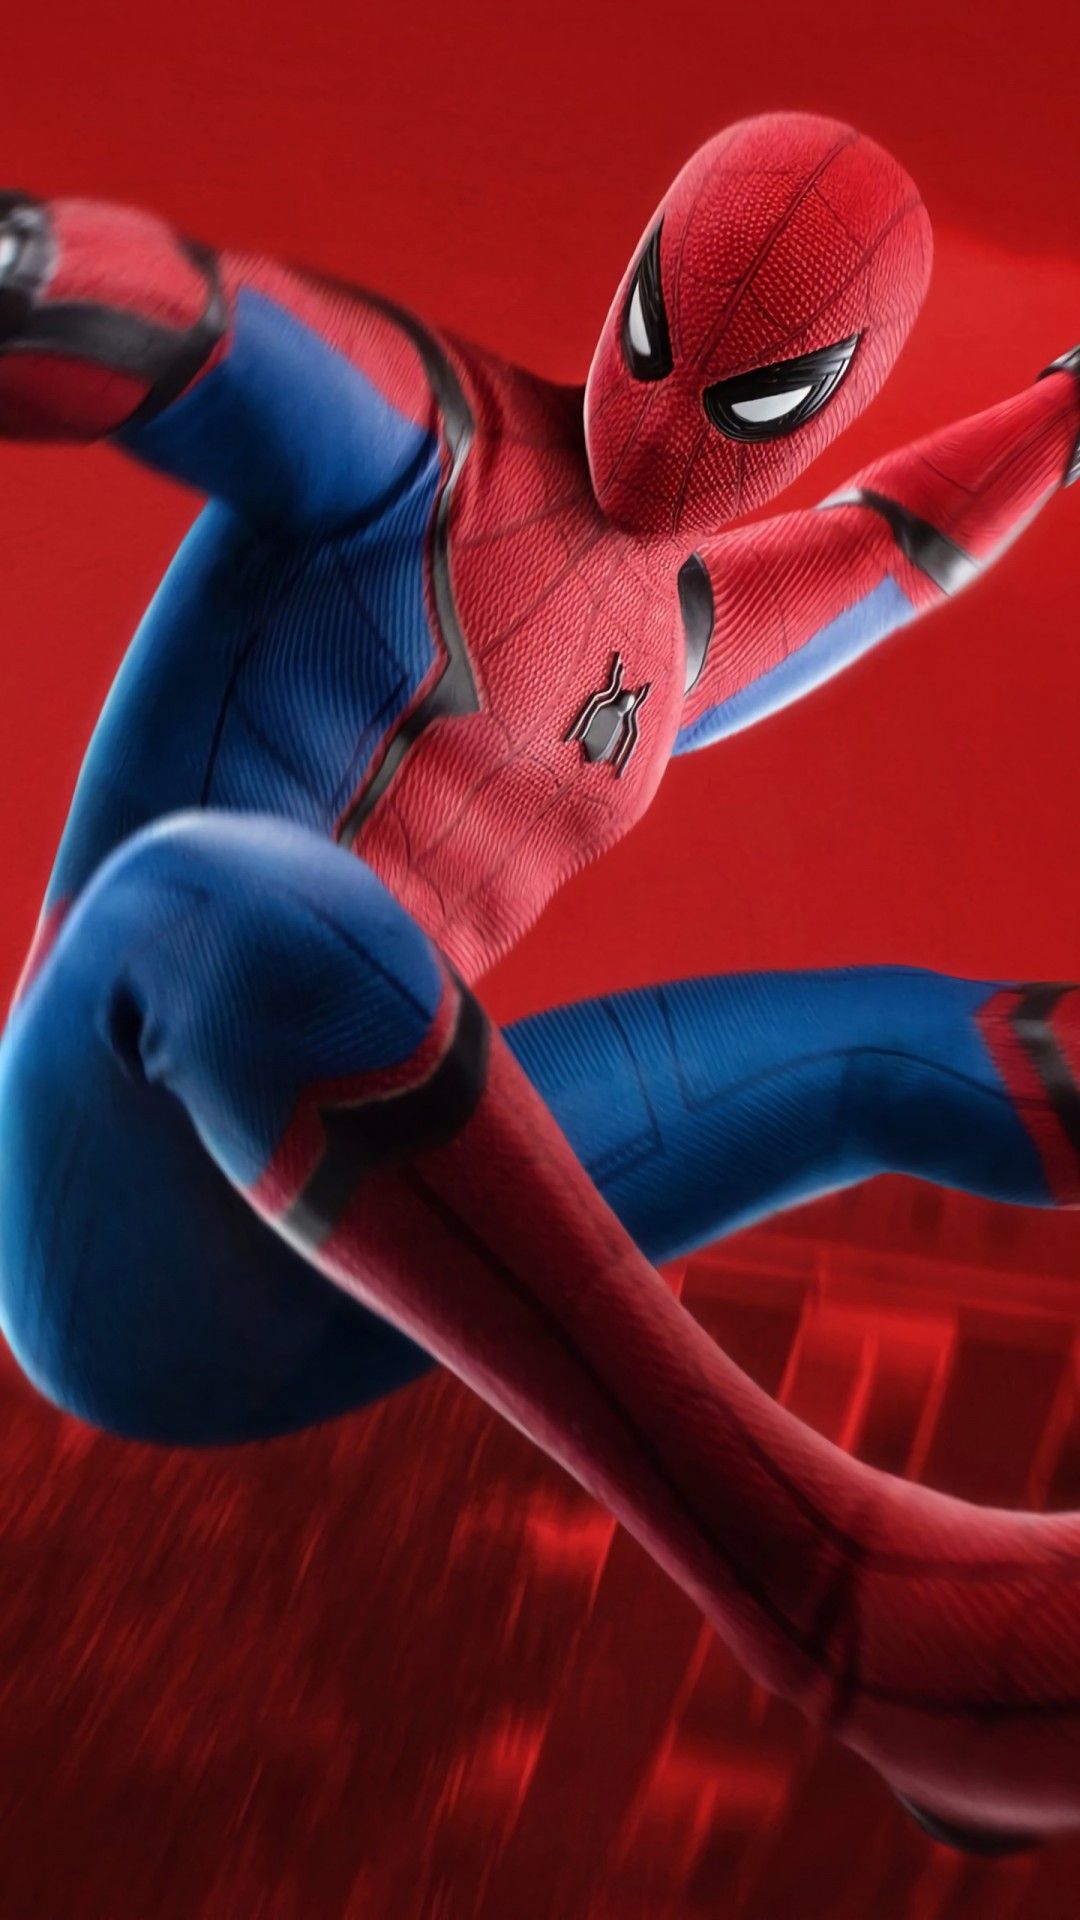 4k Ultra HD Spiderman 4k Wallpaper For Mobile